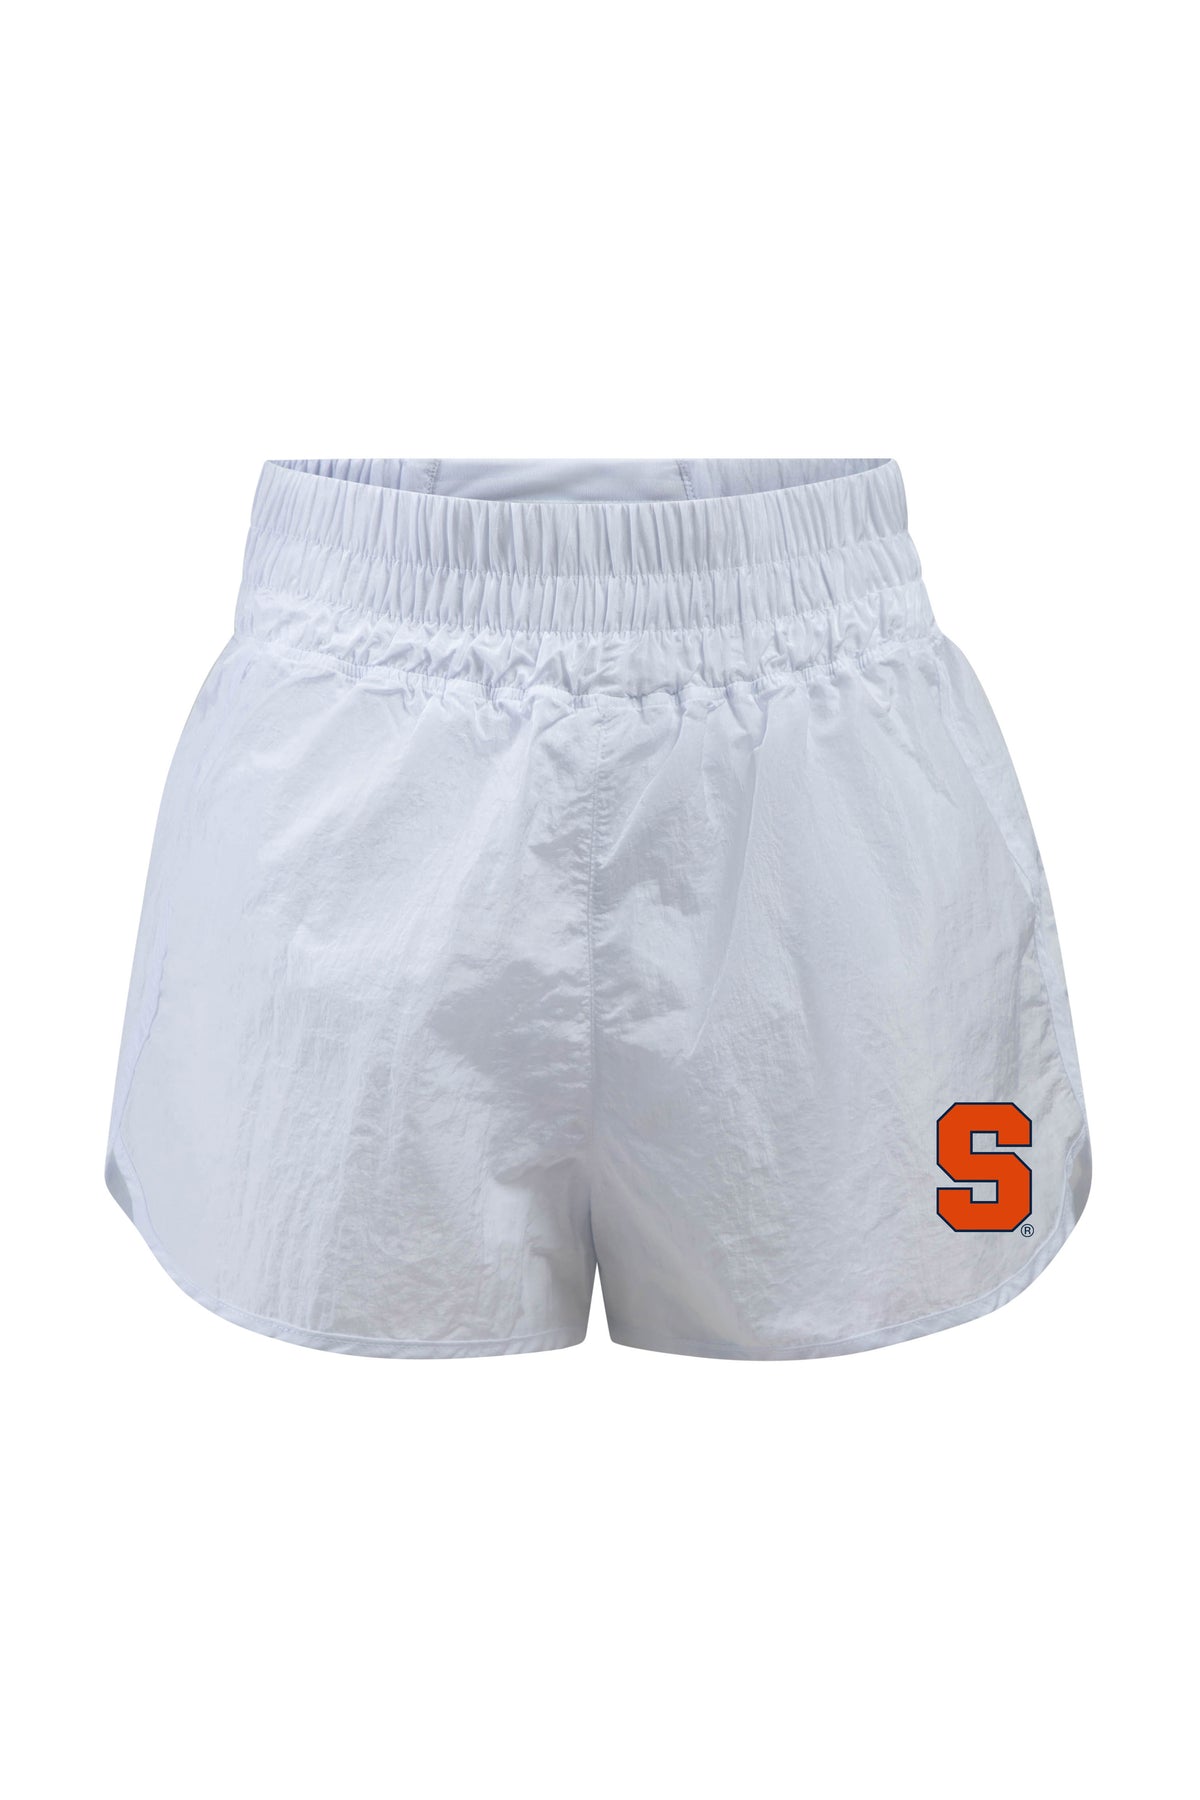 Syracuse University Boxer Short